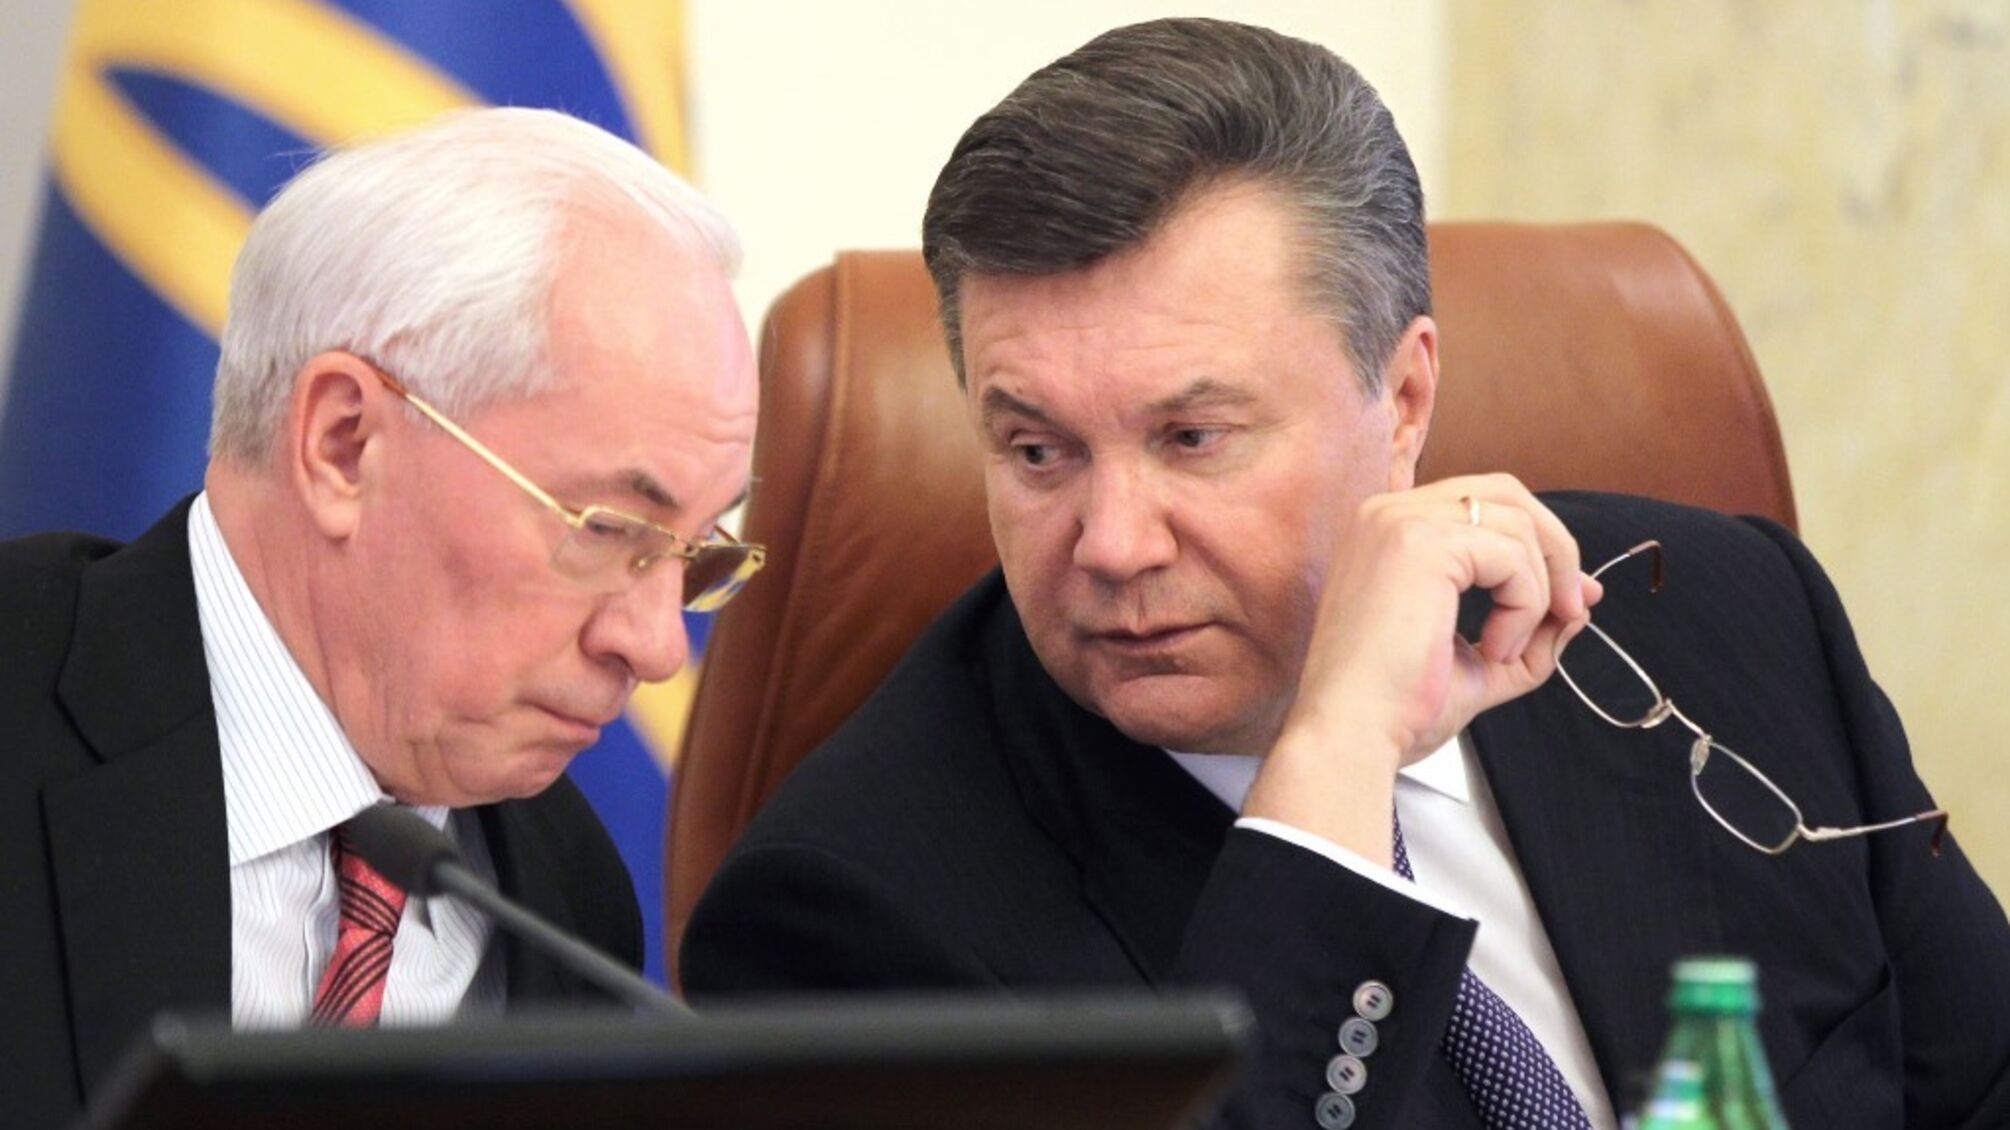 ДБР завершило расследование в отношении Януковича и еще 9 экс-чиновников за организацию расстрелов Небесной сотни на Майдане